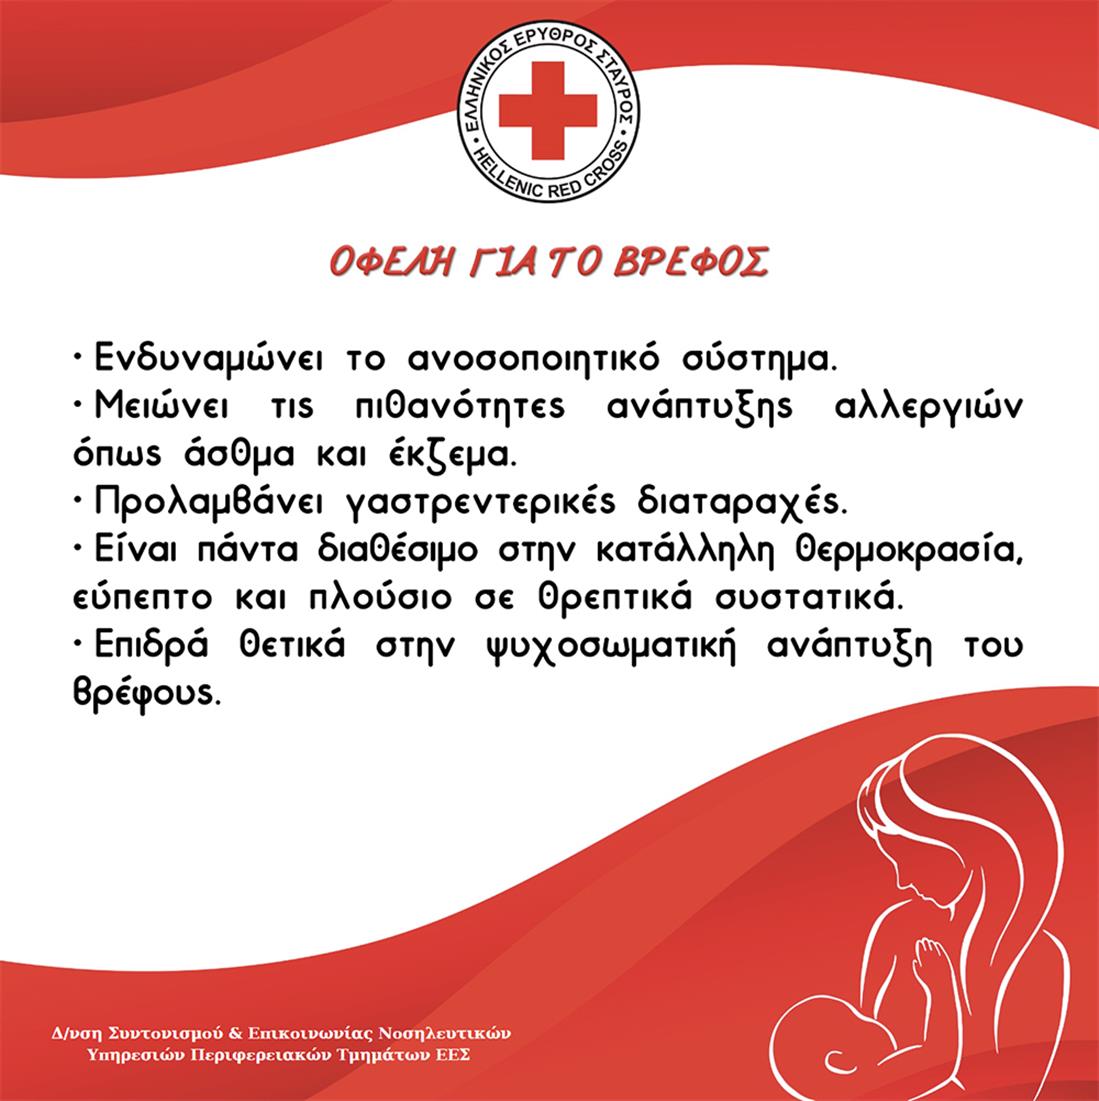 Ελληνικός Ερυθρός Σταυρός - θηλασμός